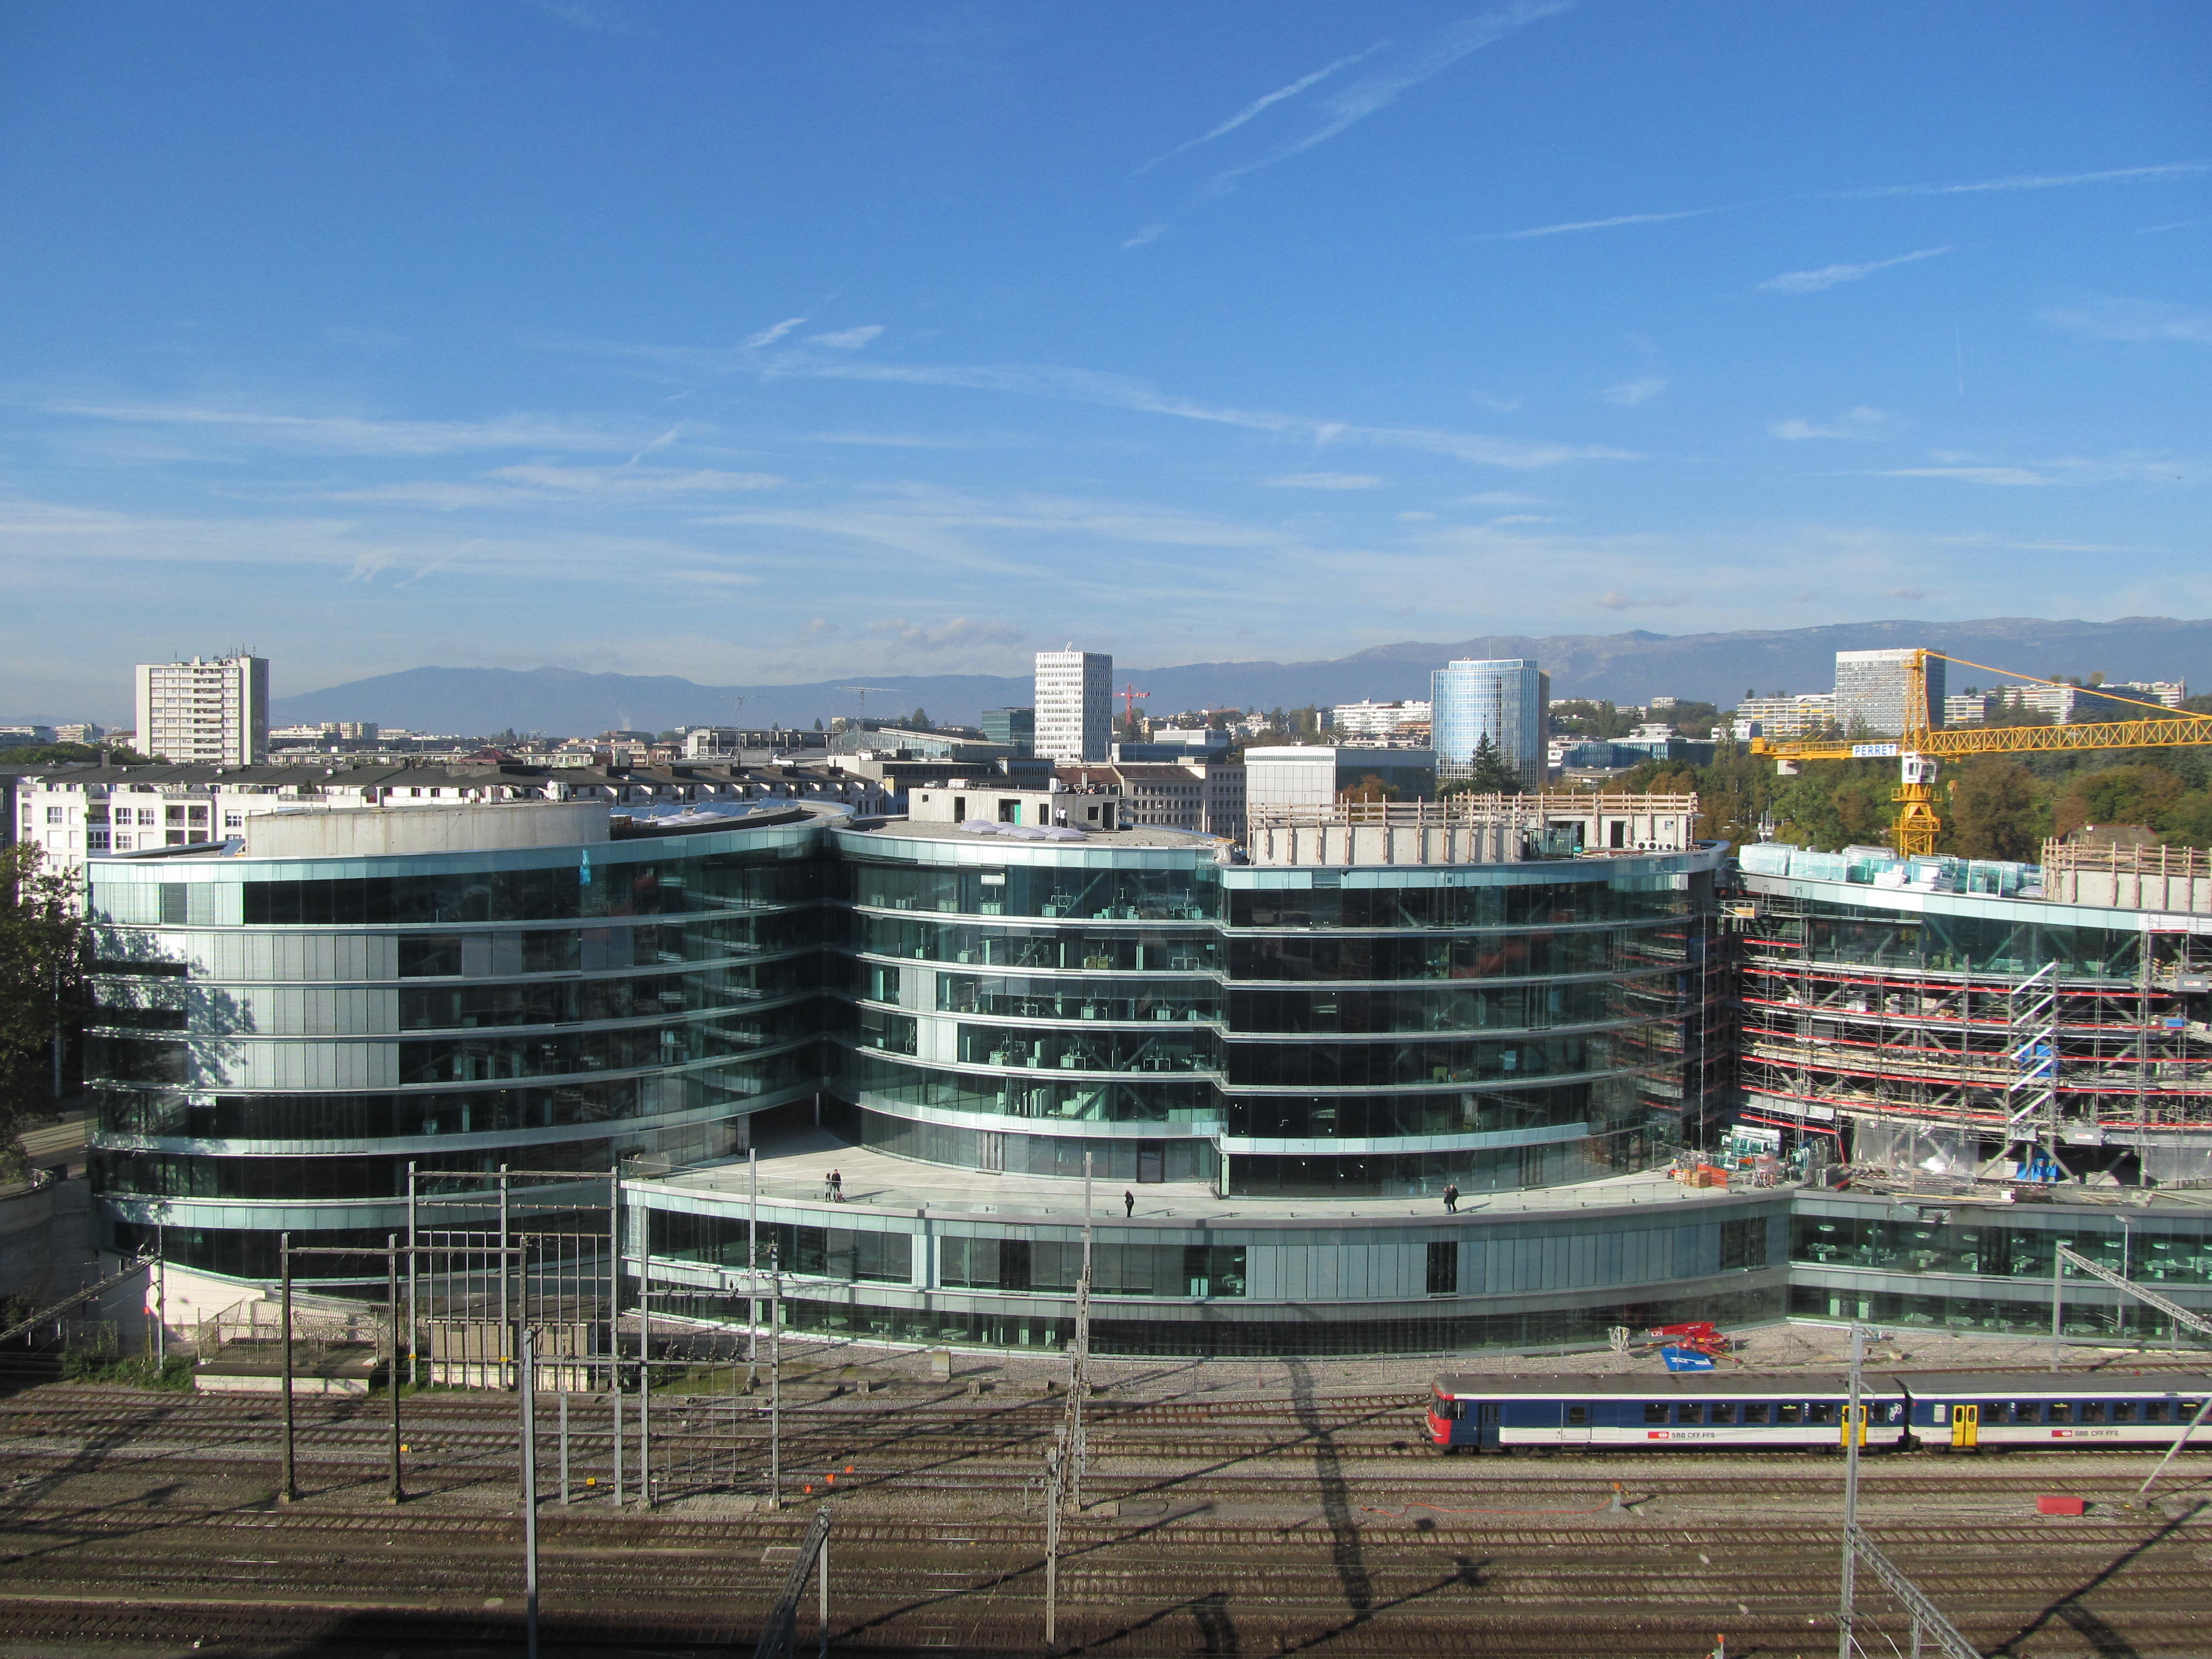 Graduate Institute Geneva